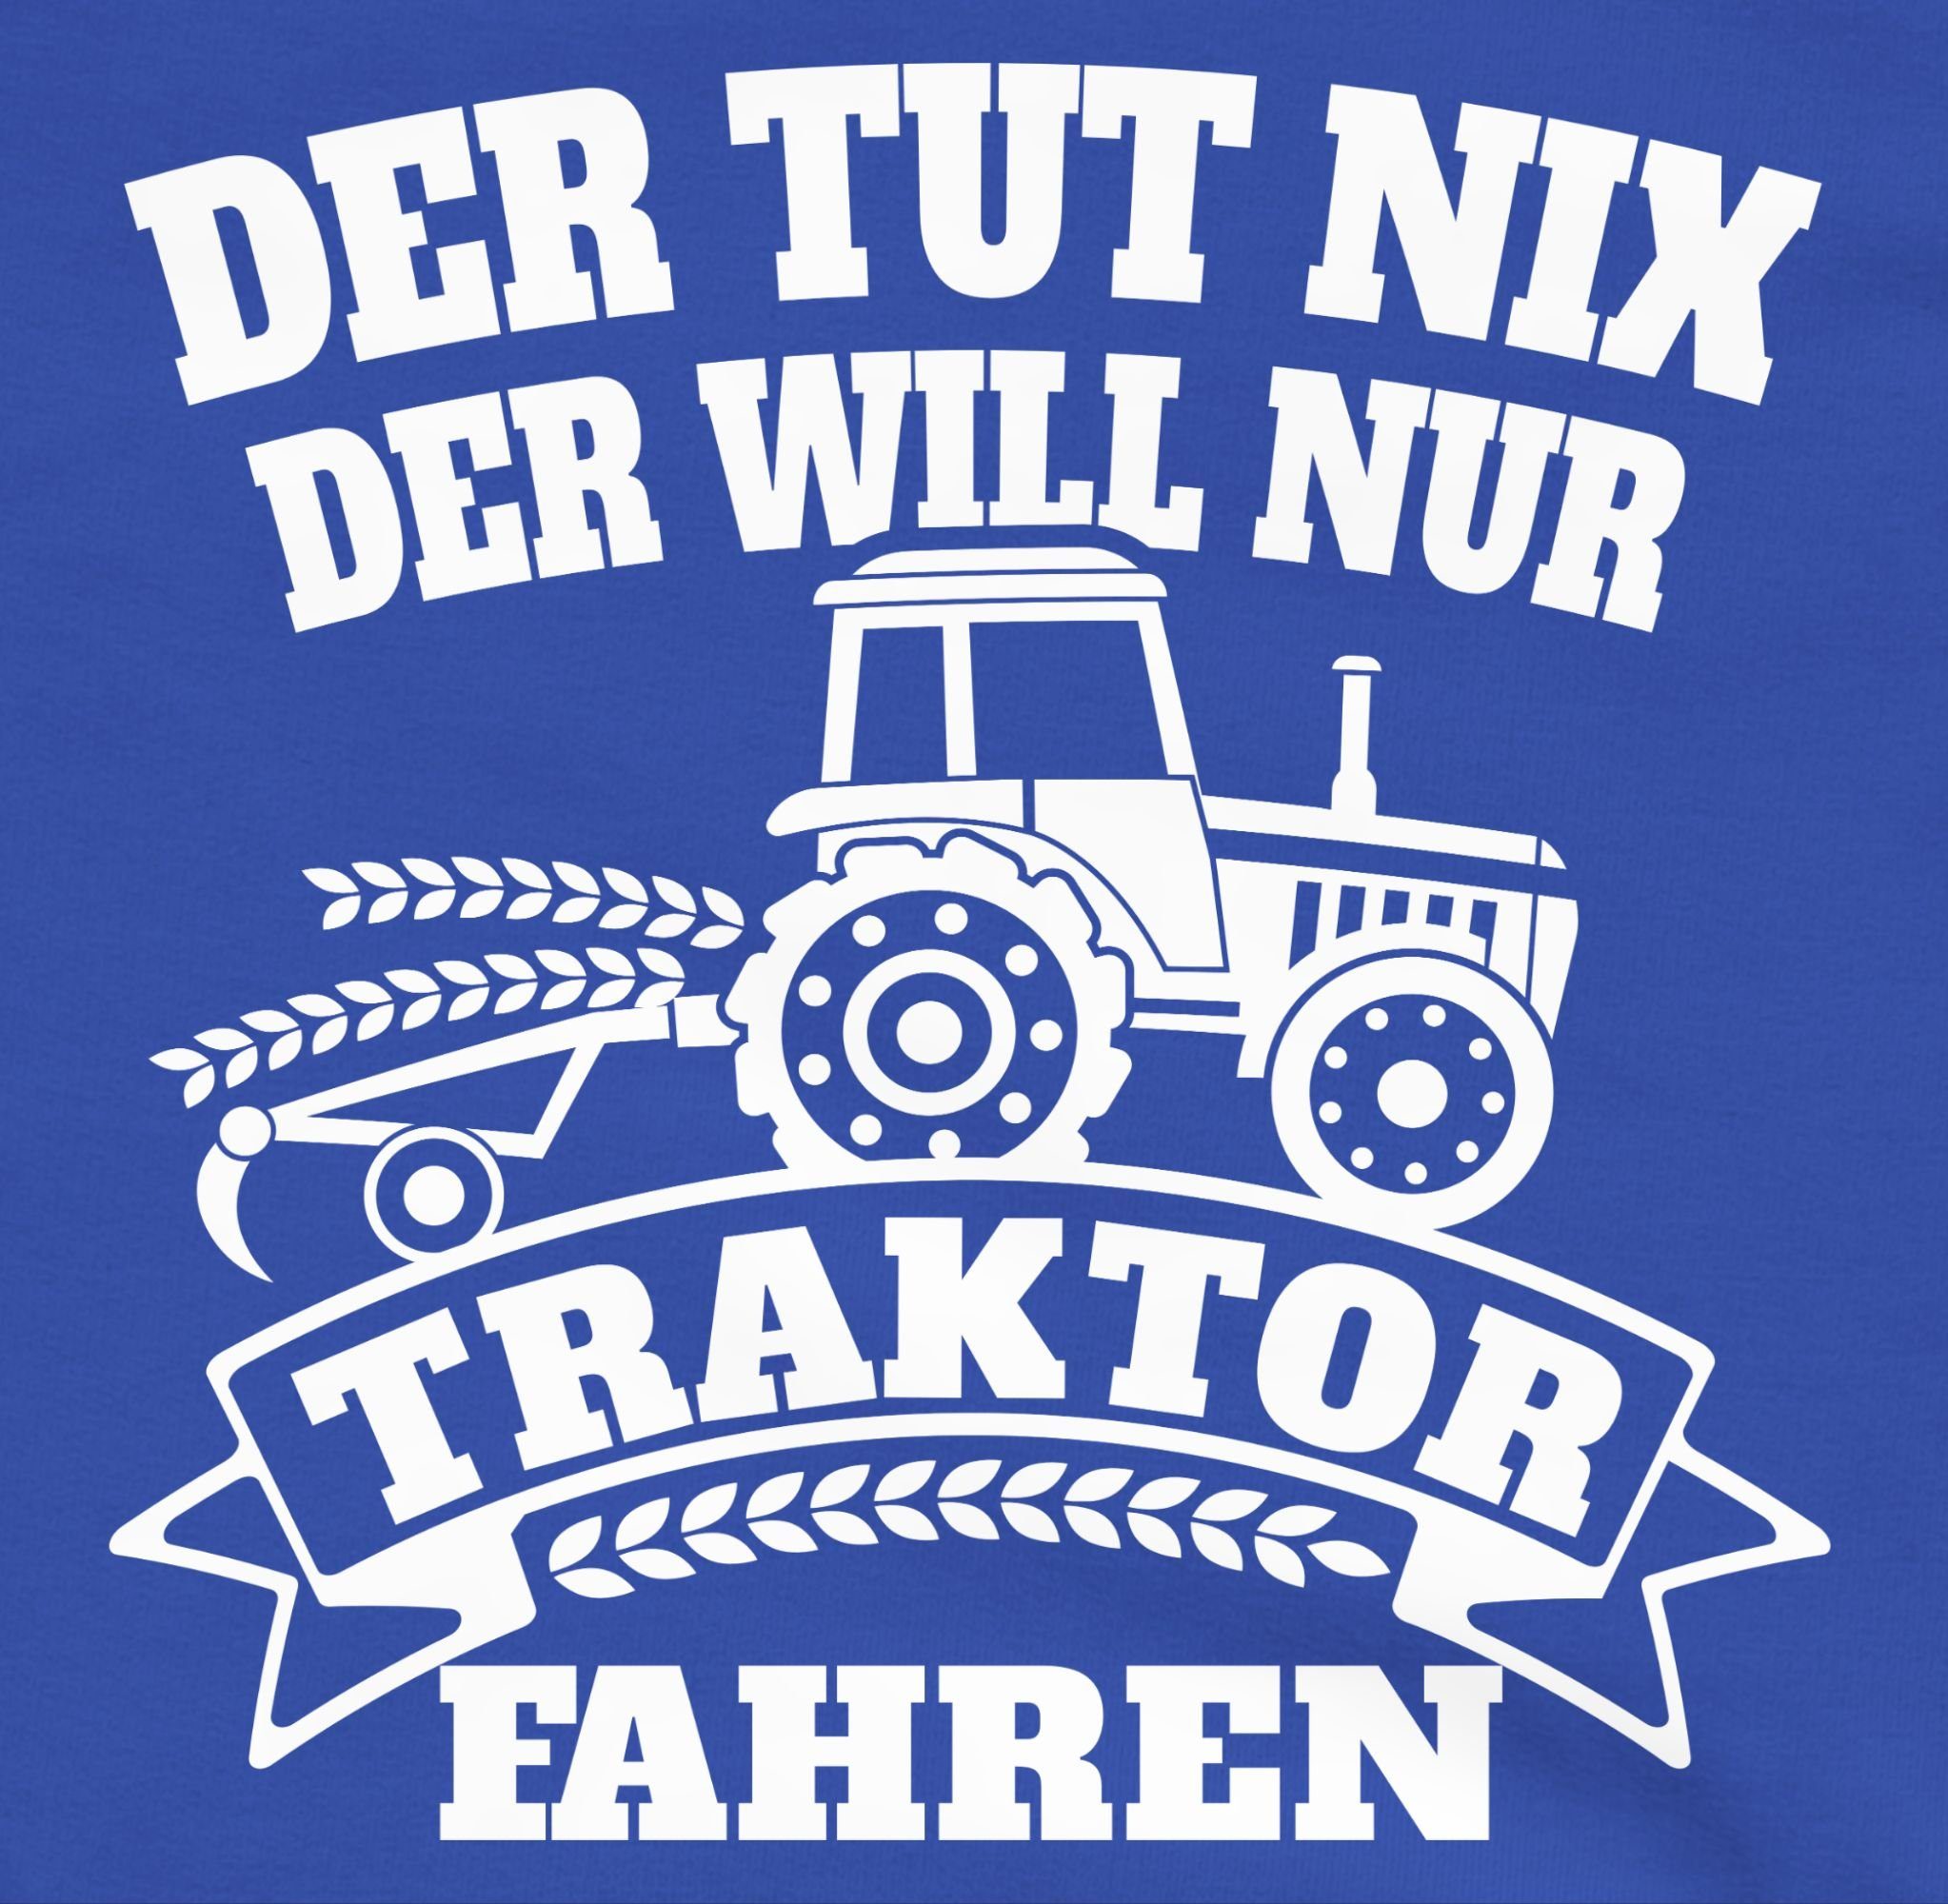 Shirtracer Sweatshirt Der tut nix 2 Traktor nur fahren will Royalblau Traktor der